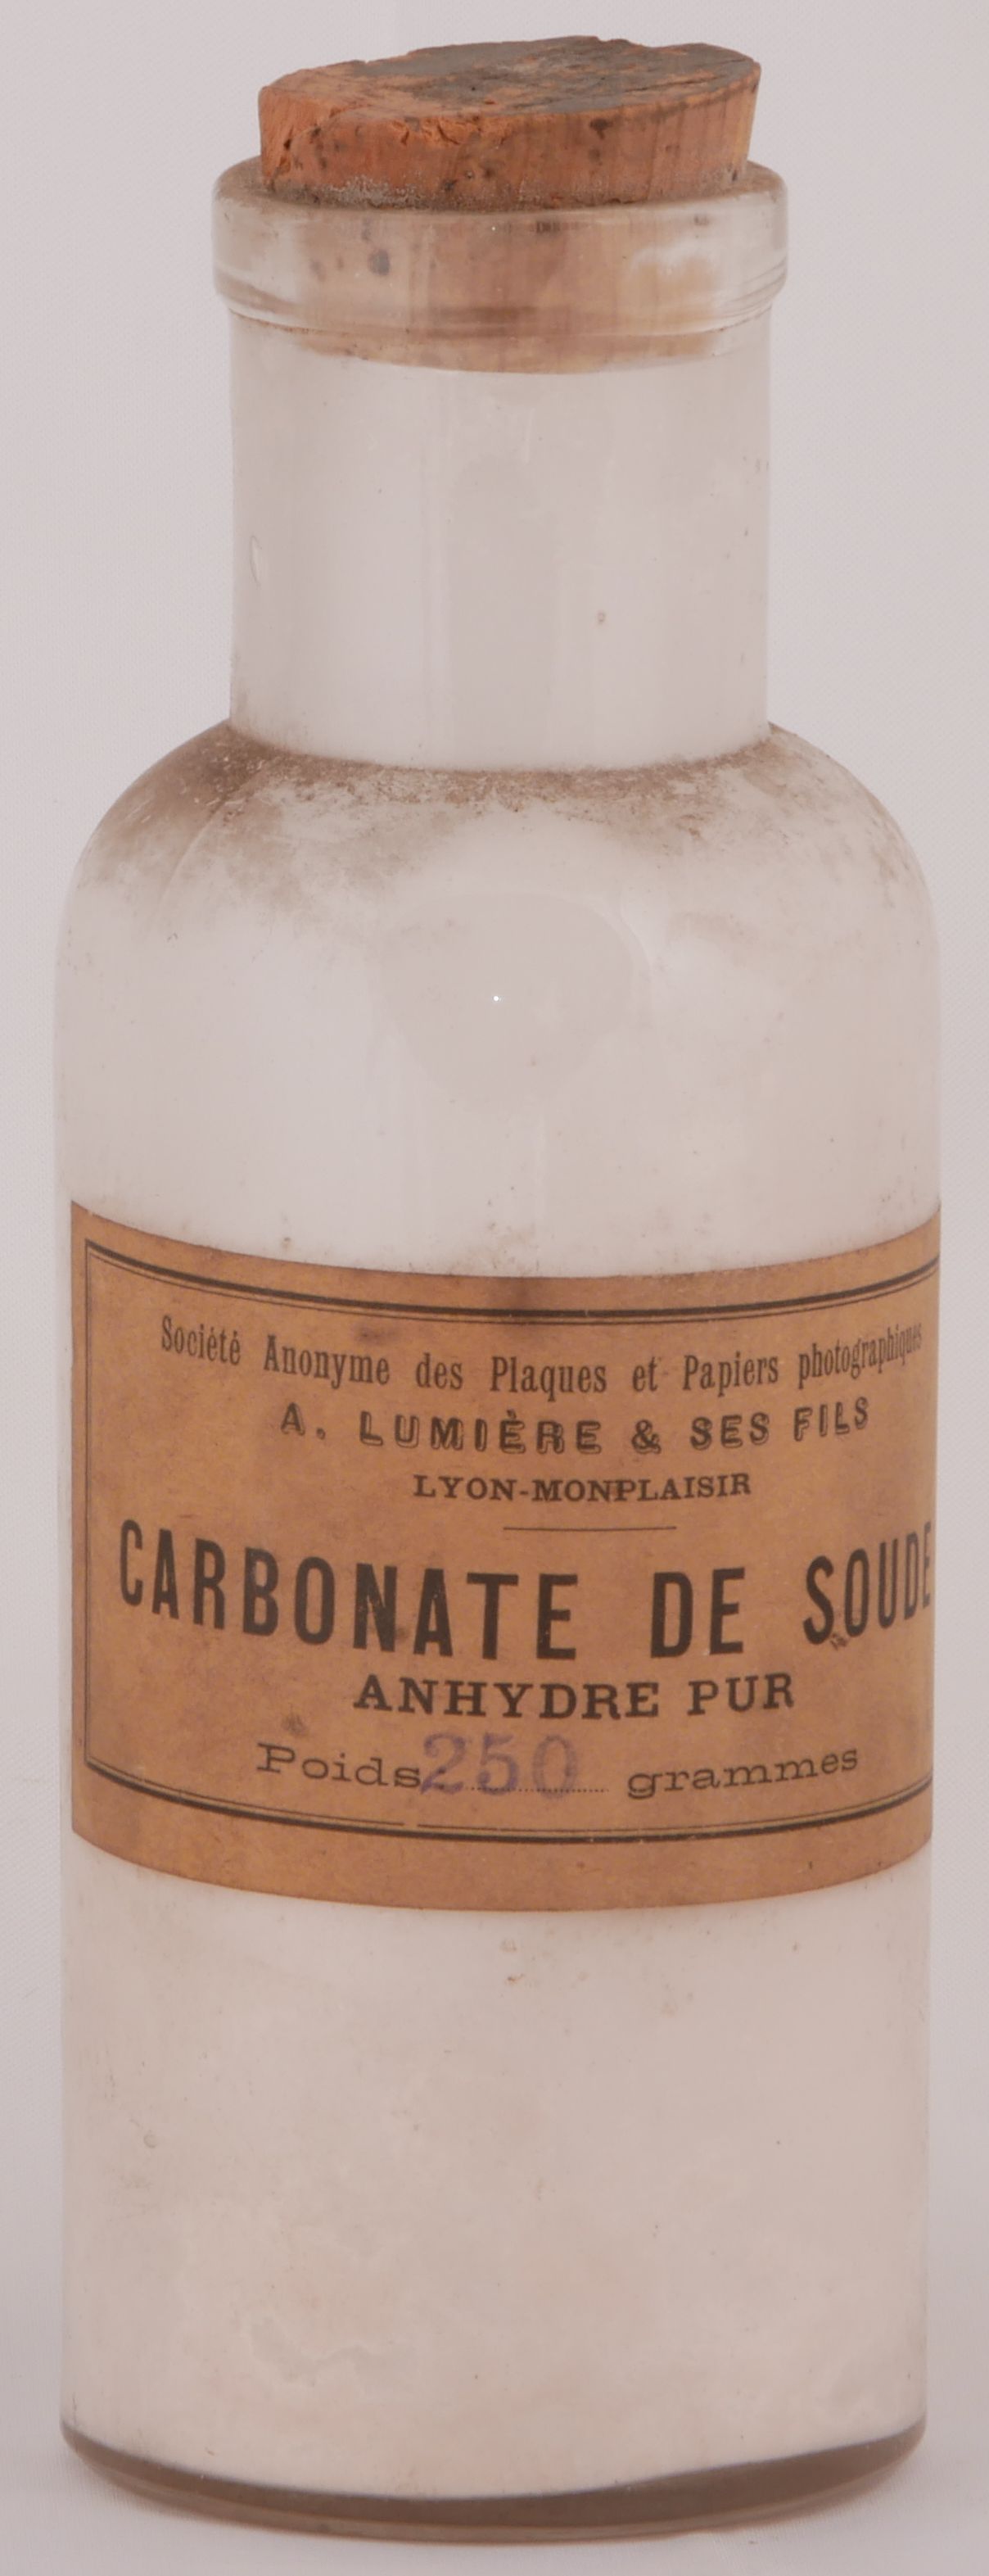 Carbonate de soude - 250 g